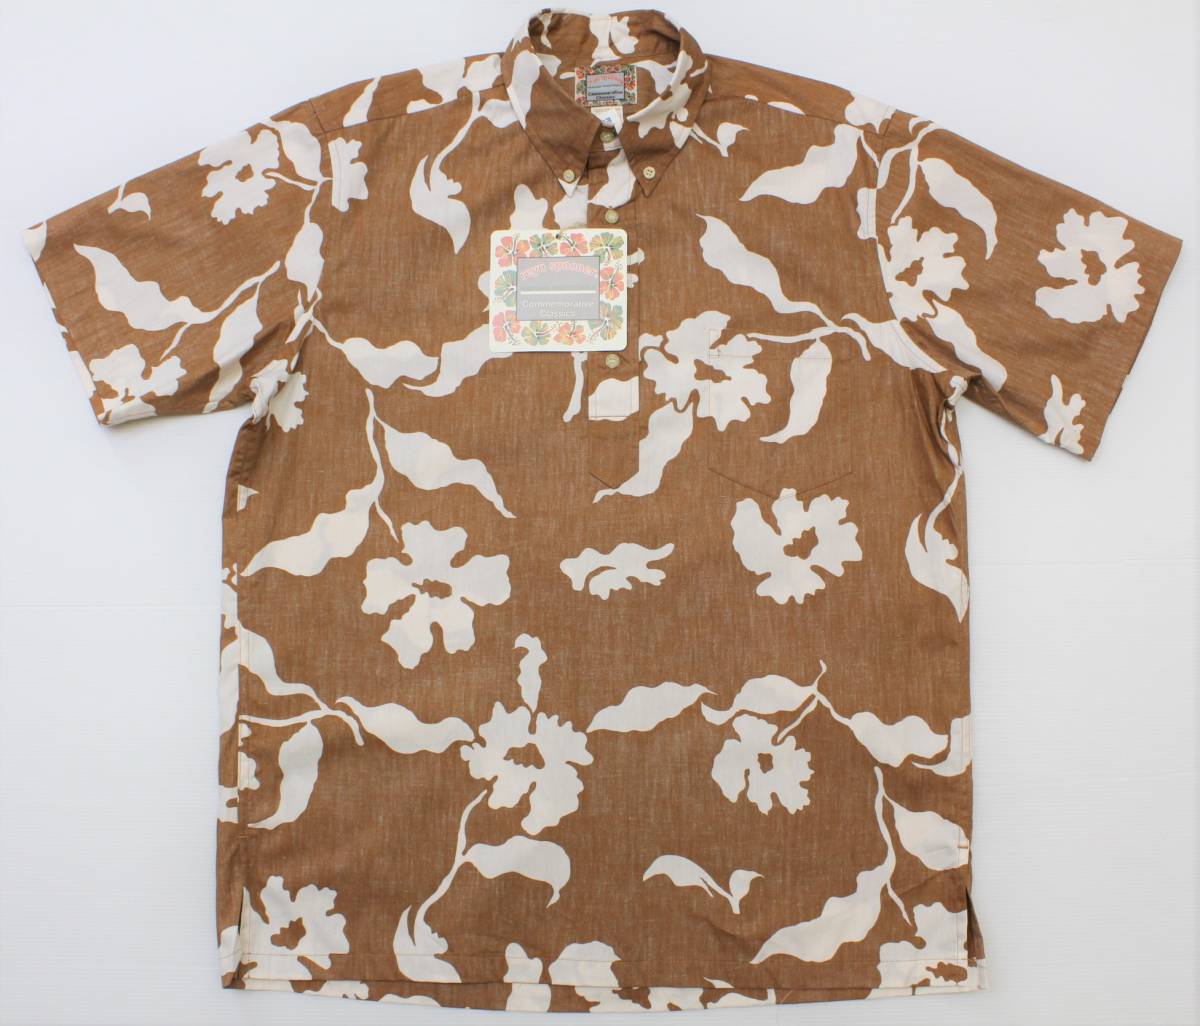 RSS09 Rainse Pooner xs Tahitian Classic Перепечатка 100%пуговица хлопка вниз по короткому короткому рубашке Aloha USA Made Spooner